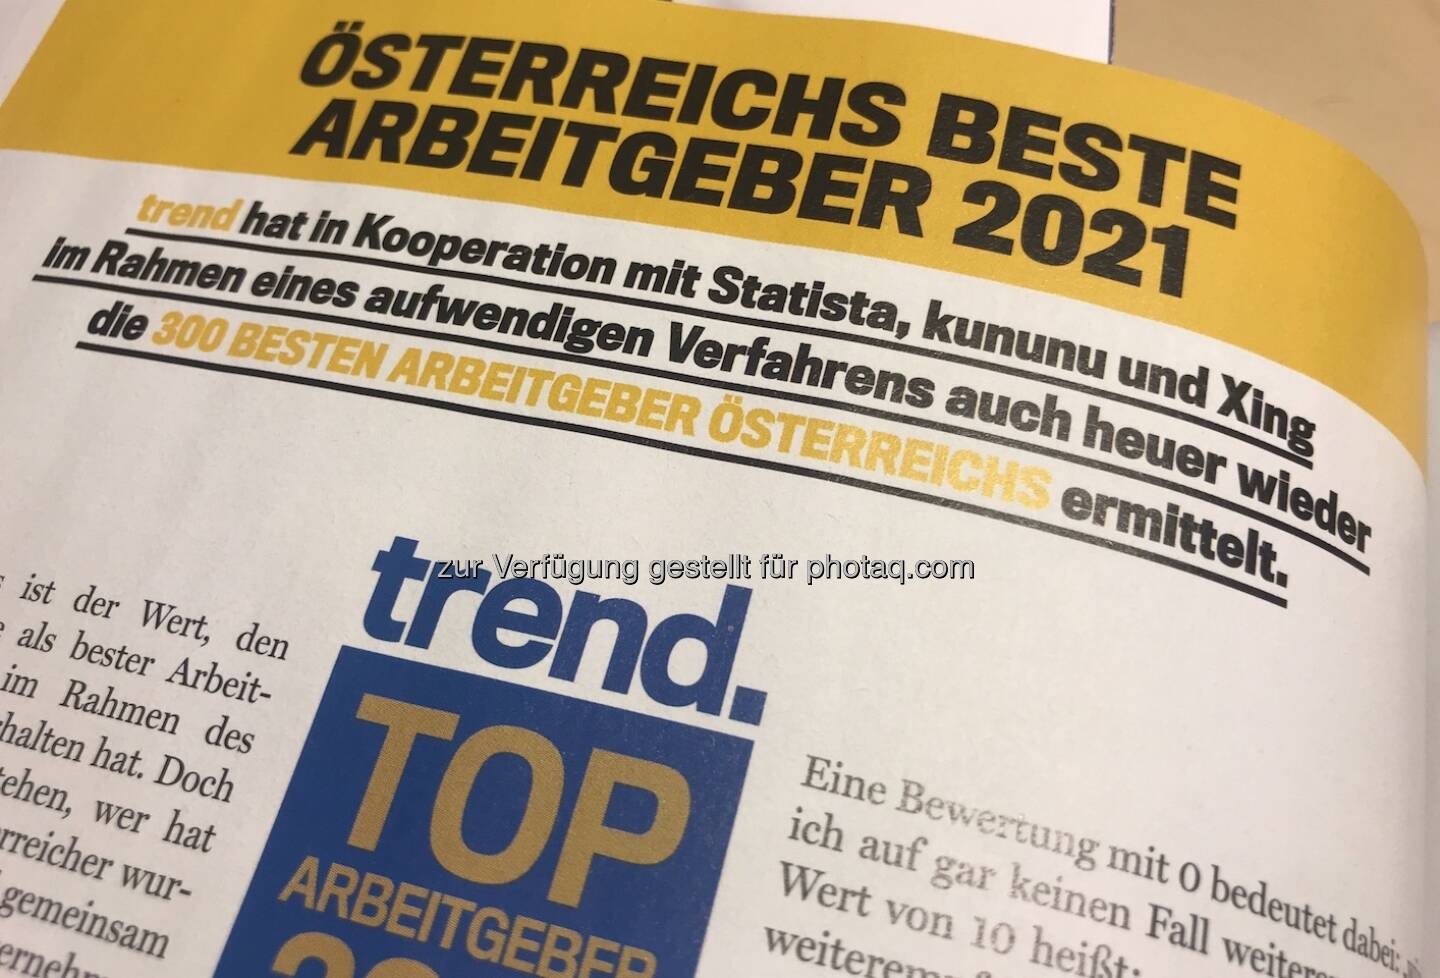 Österreichs beste Arbeitgeber by trend